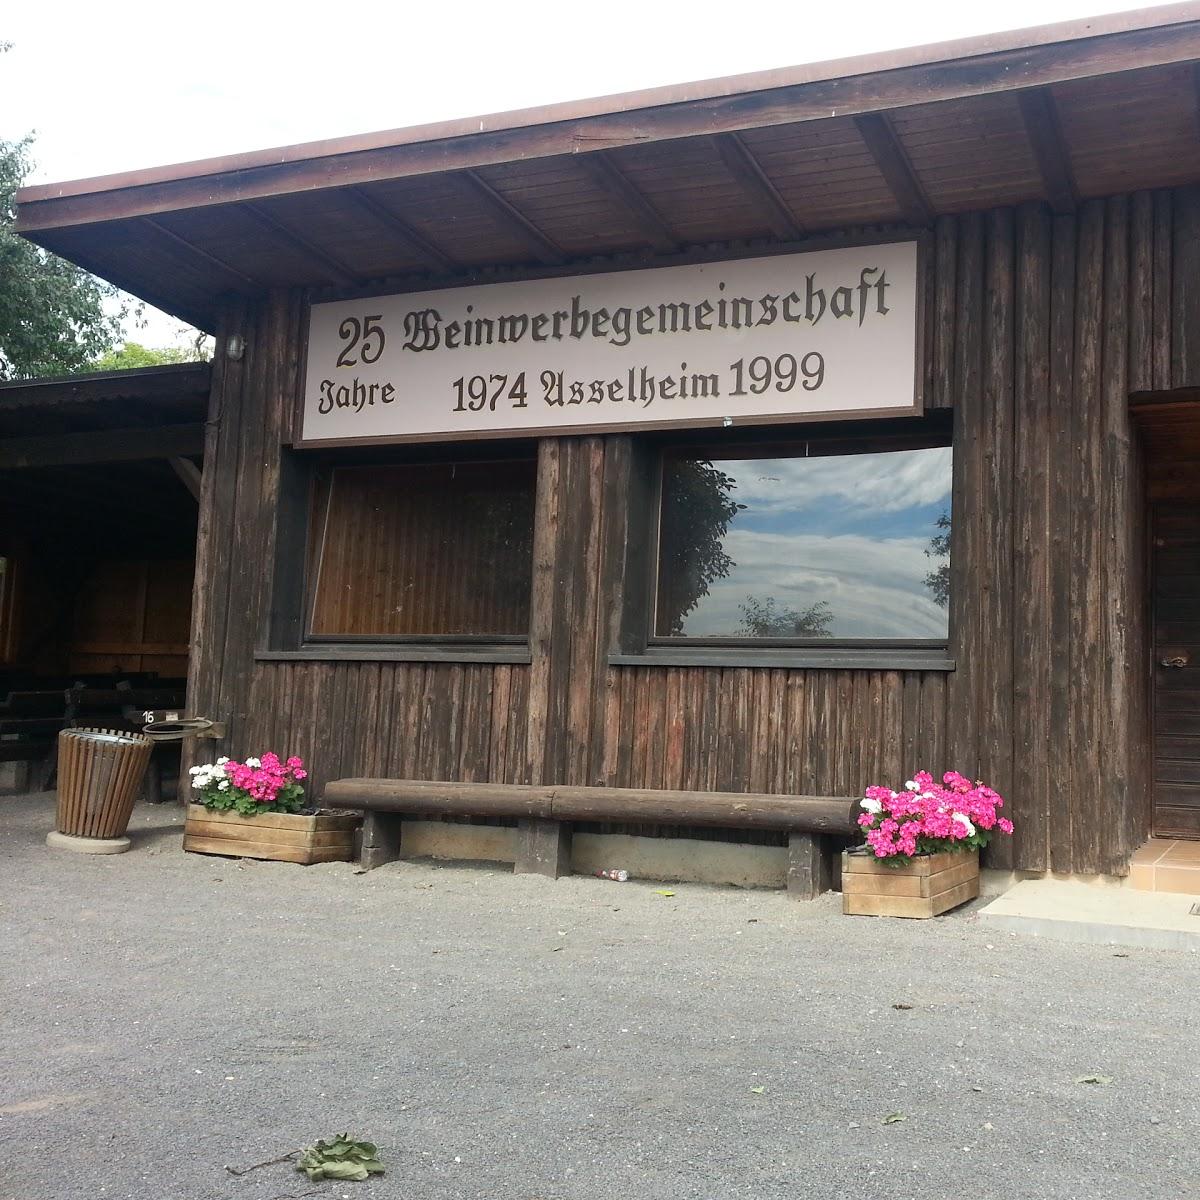 Restaurant "Weinwanderhütte Asselheim" in Grünstadt